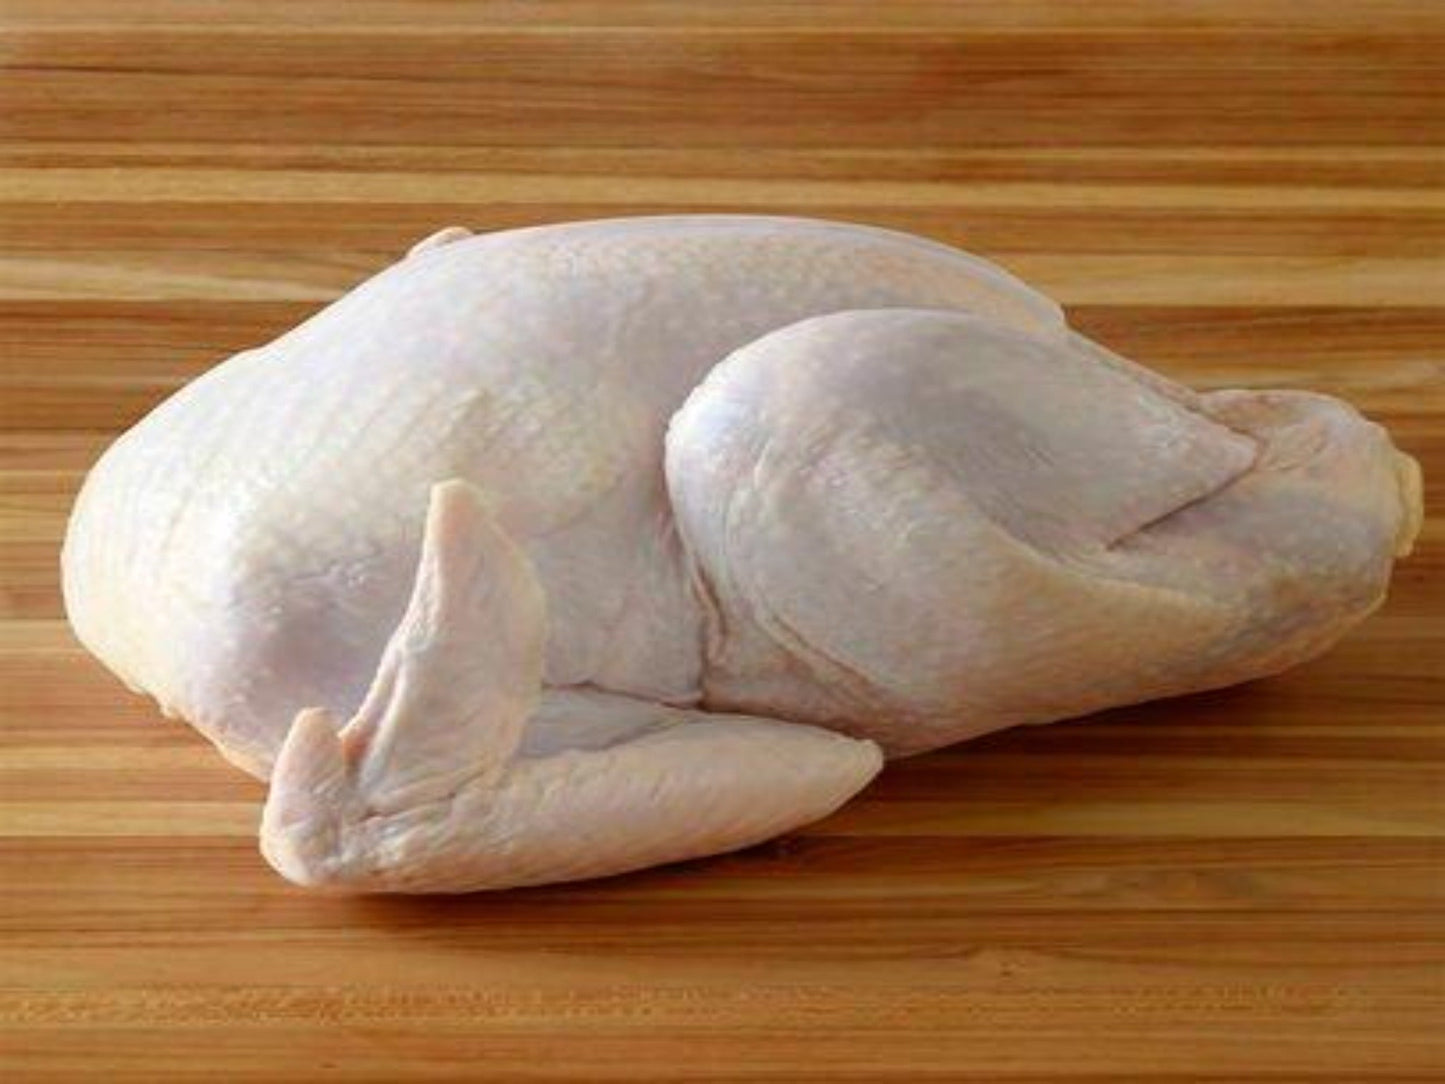 Organic Whole Turkey (uncooked)